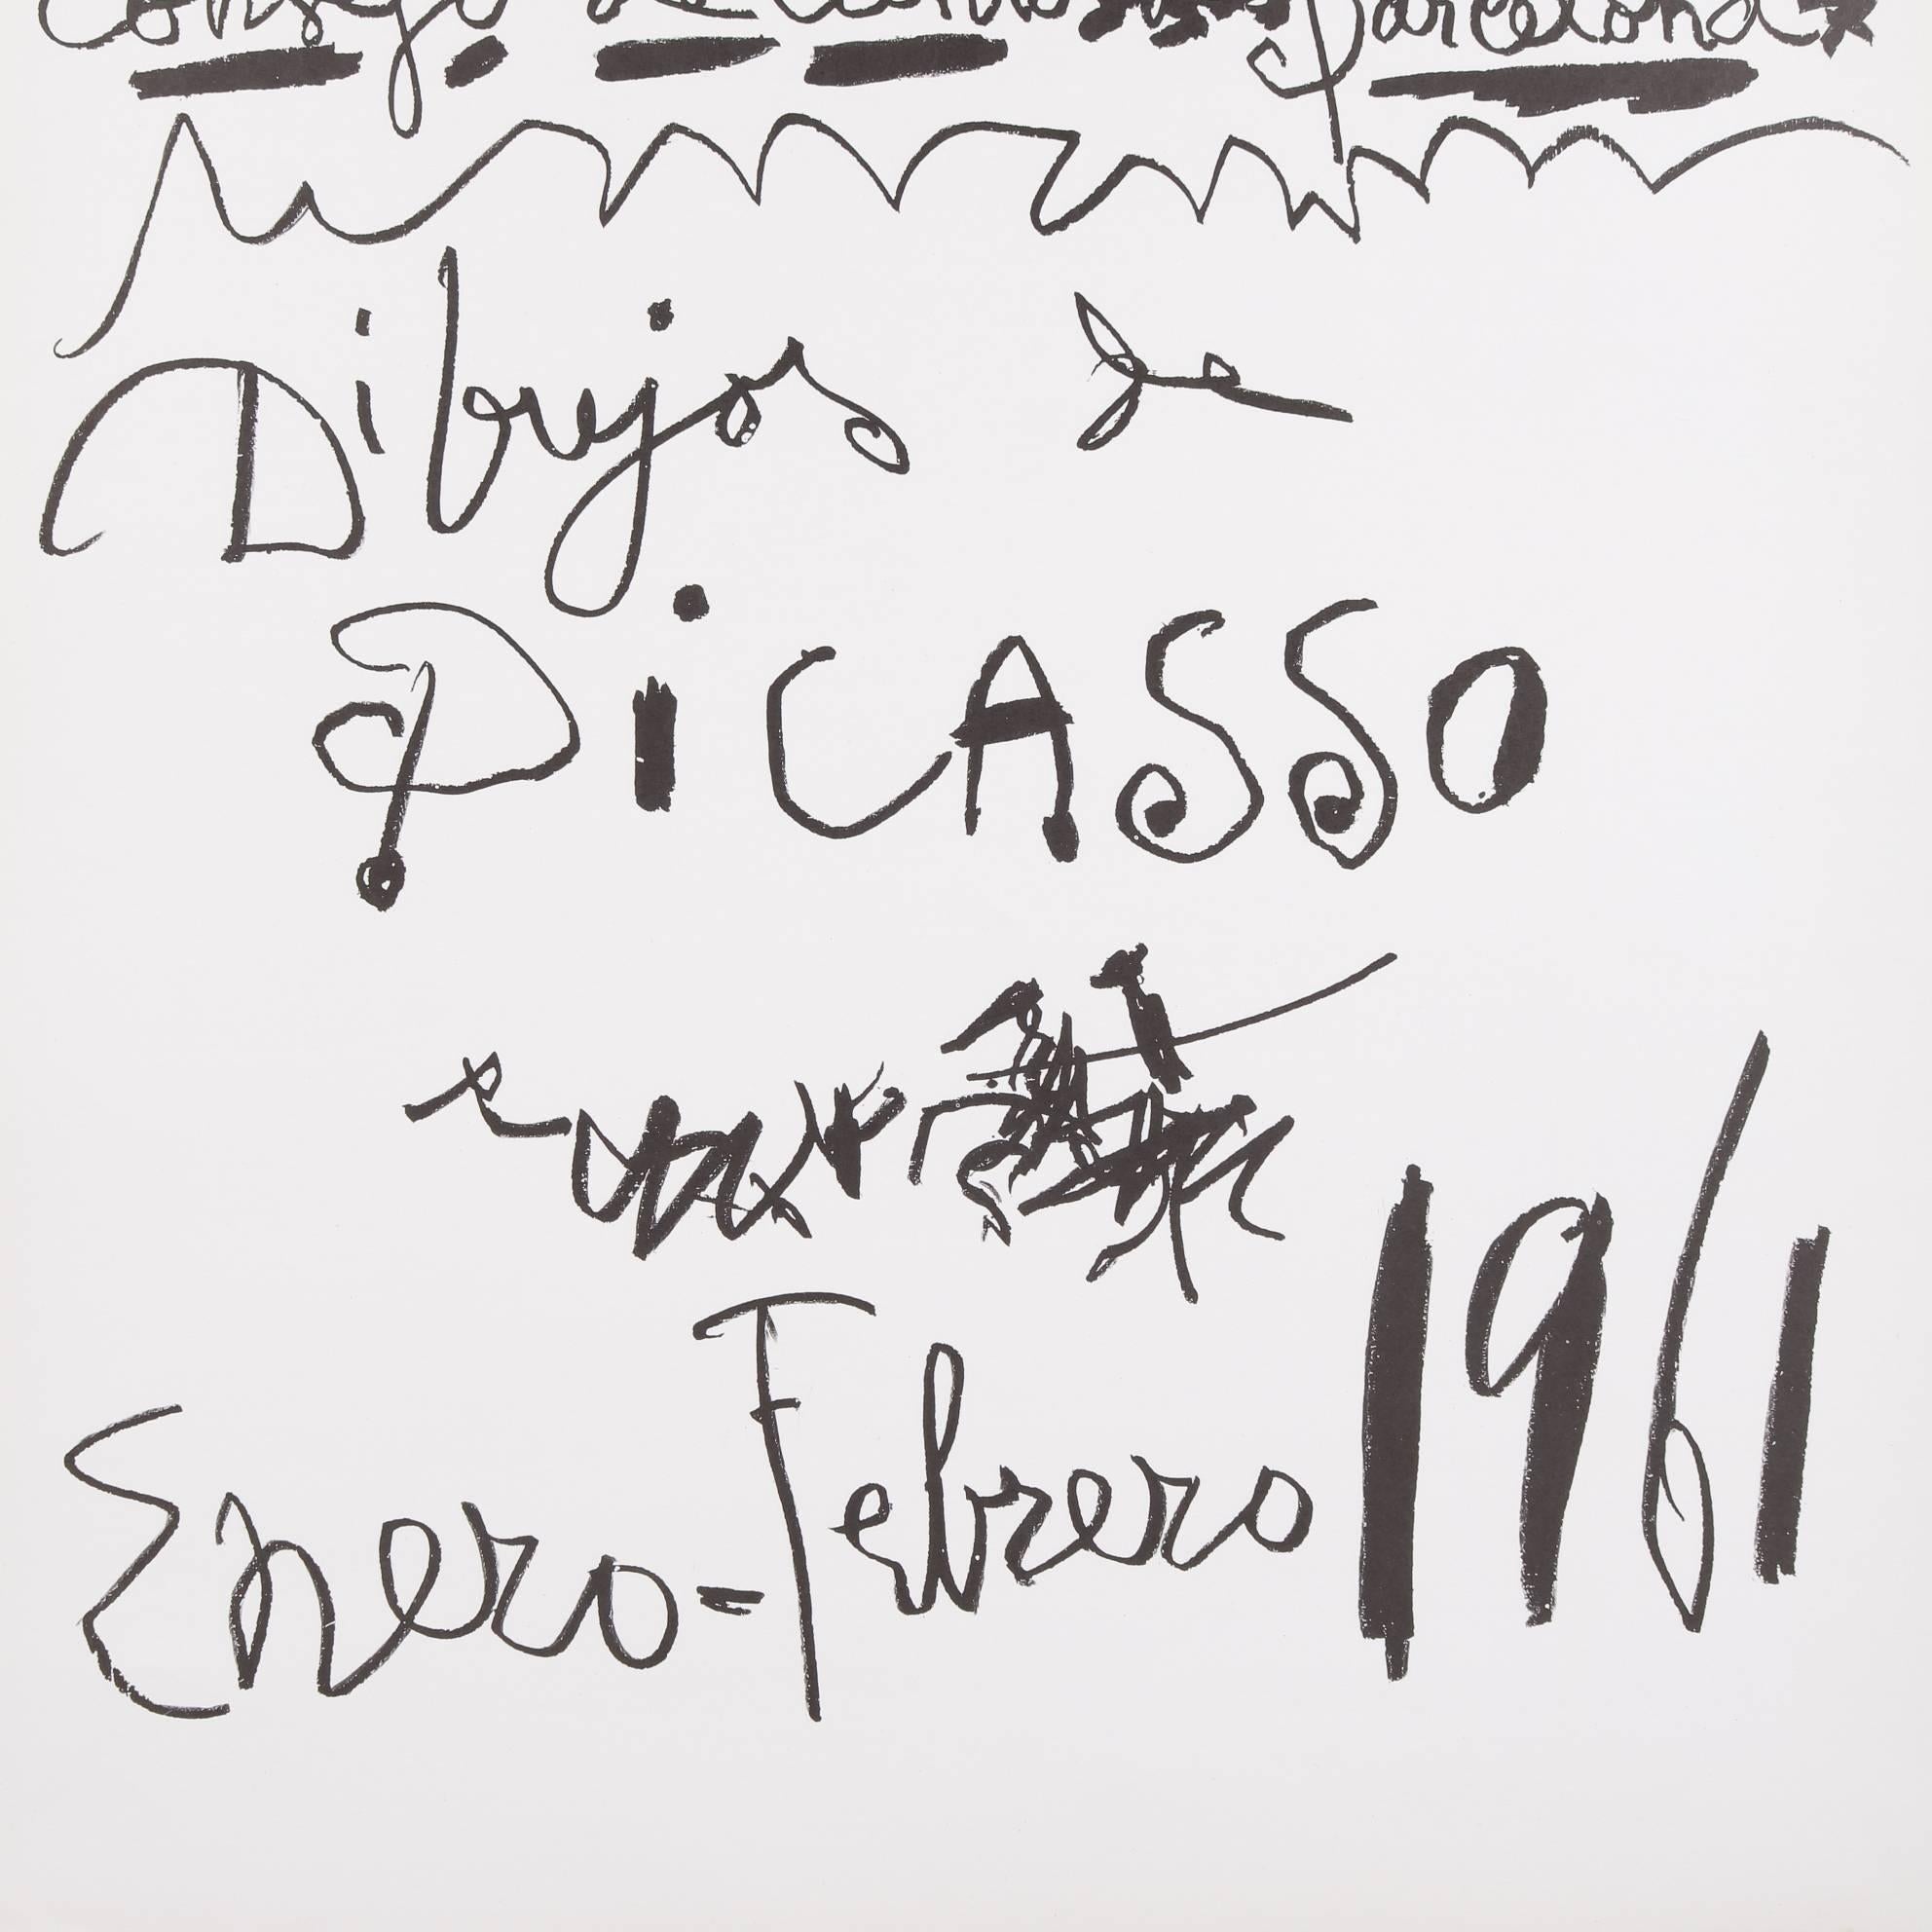 Original Picasso lithographic poster 